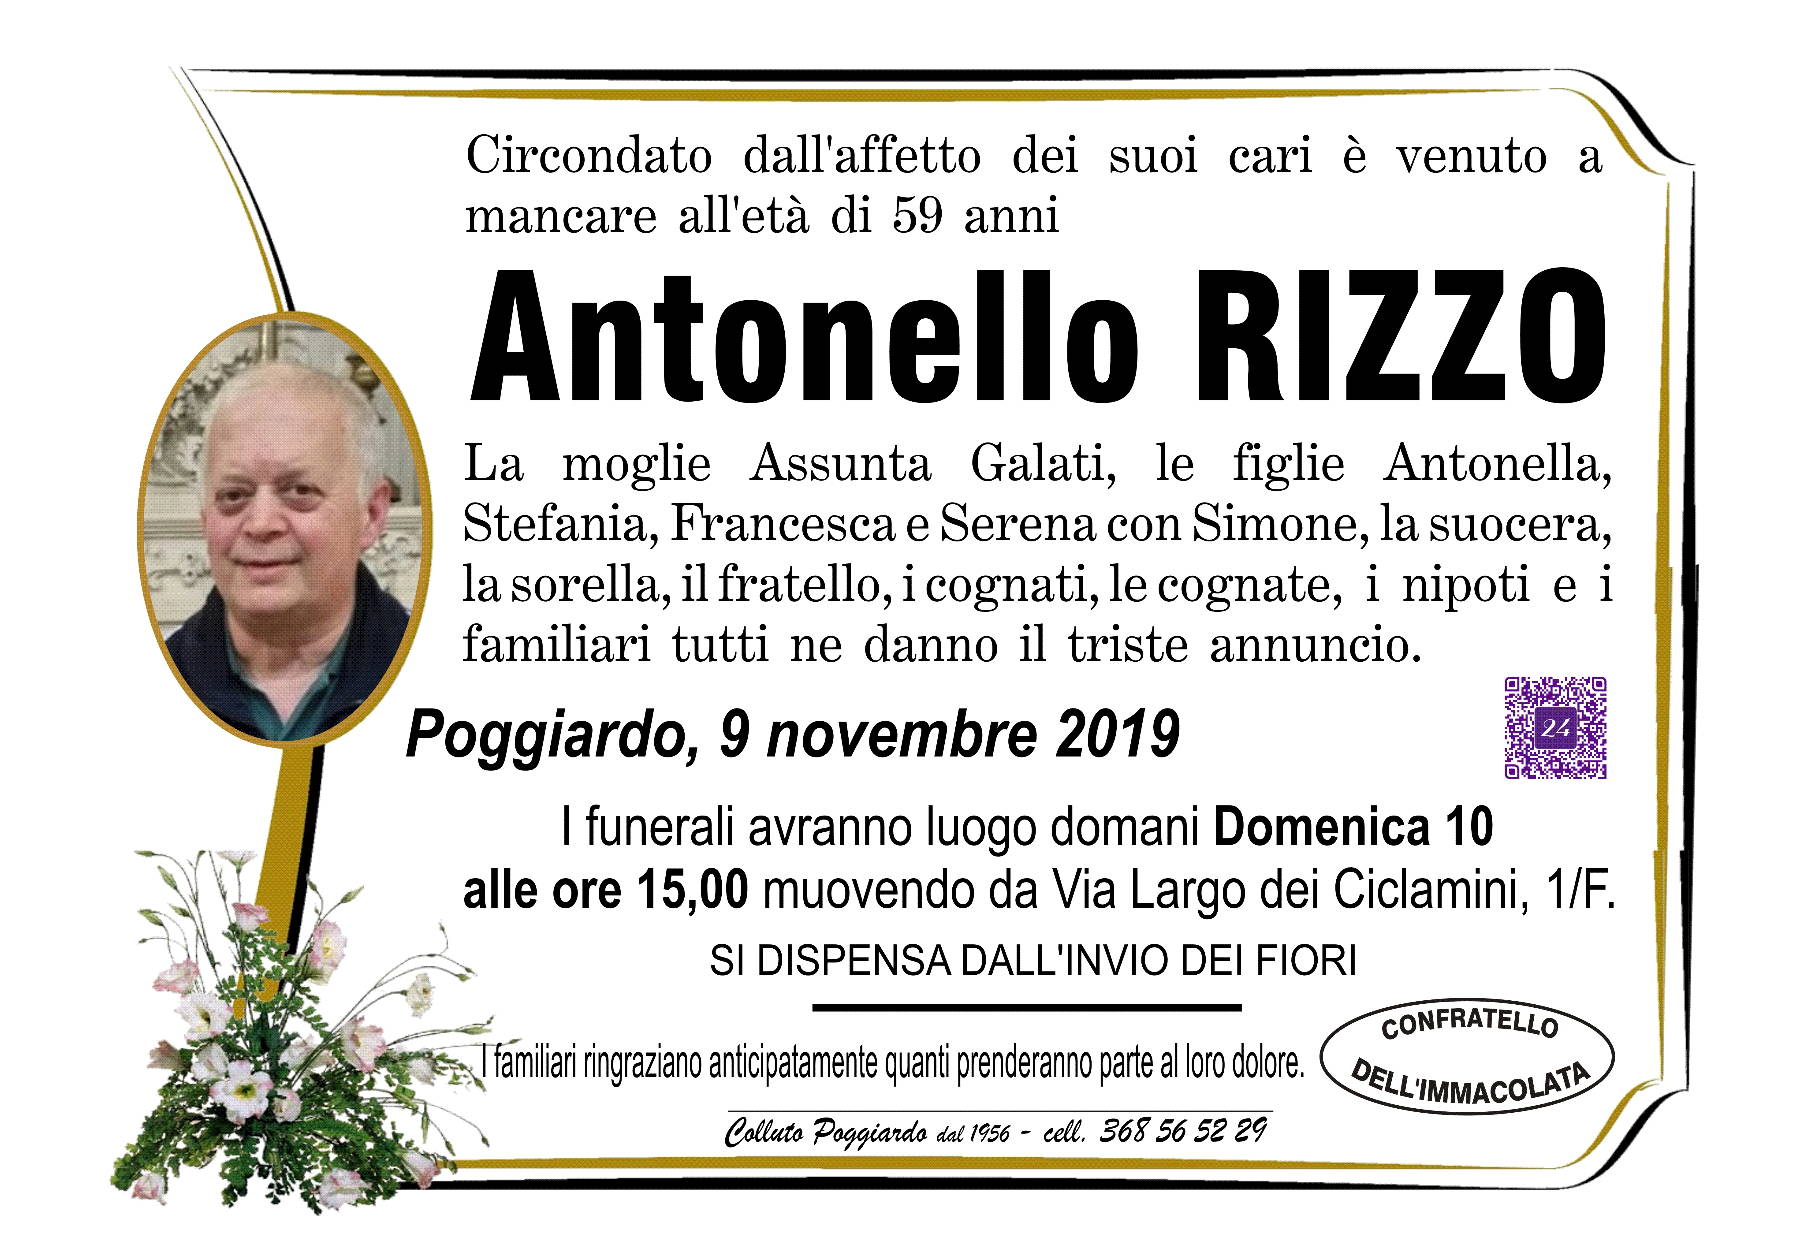 Antonello Rizzo